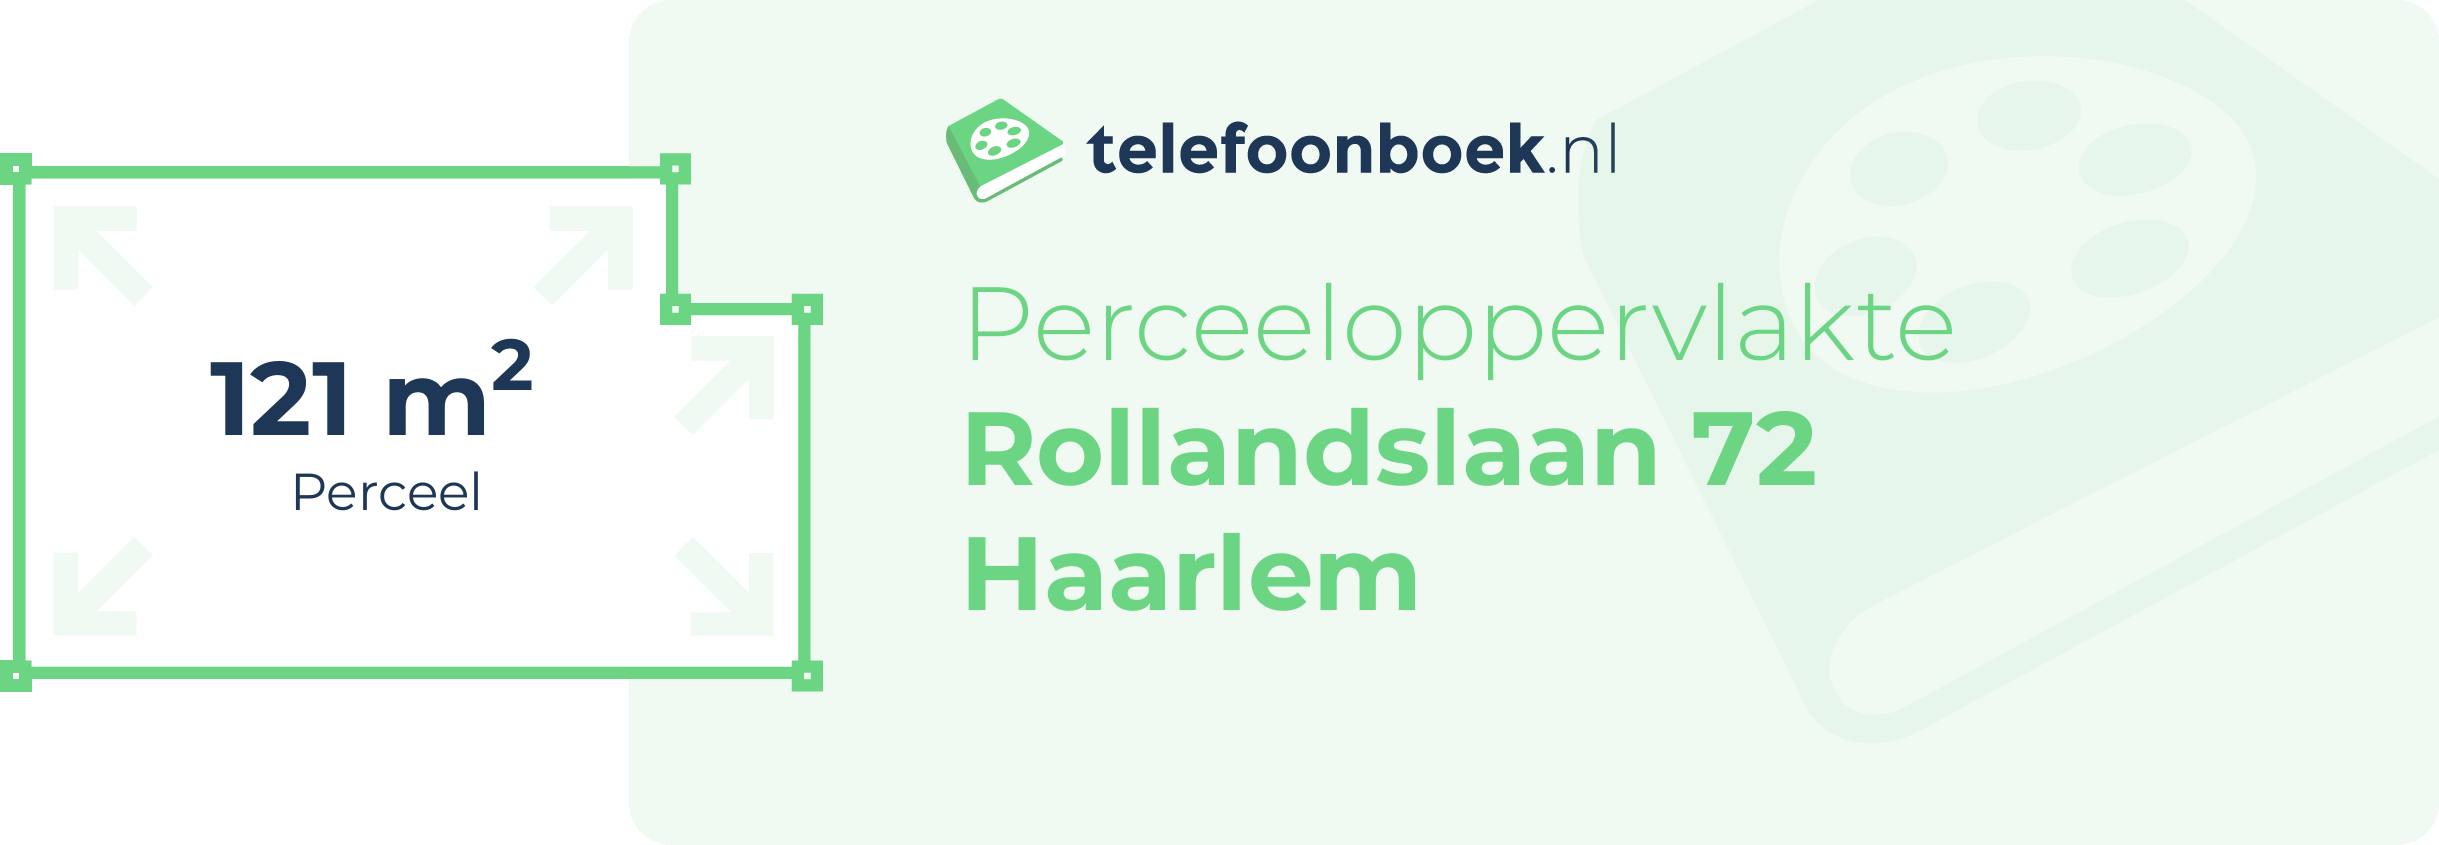 Perceeloppervlakte Rollandslaan 72 Haarlem